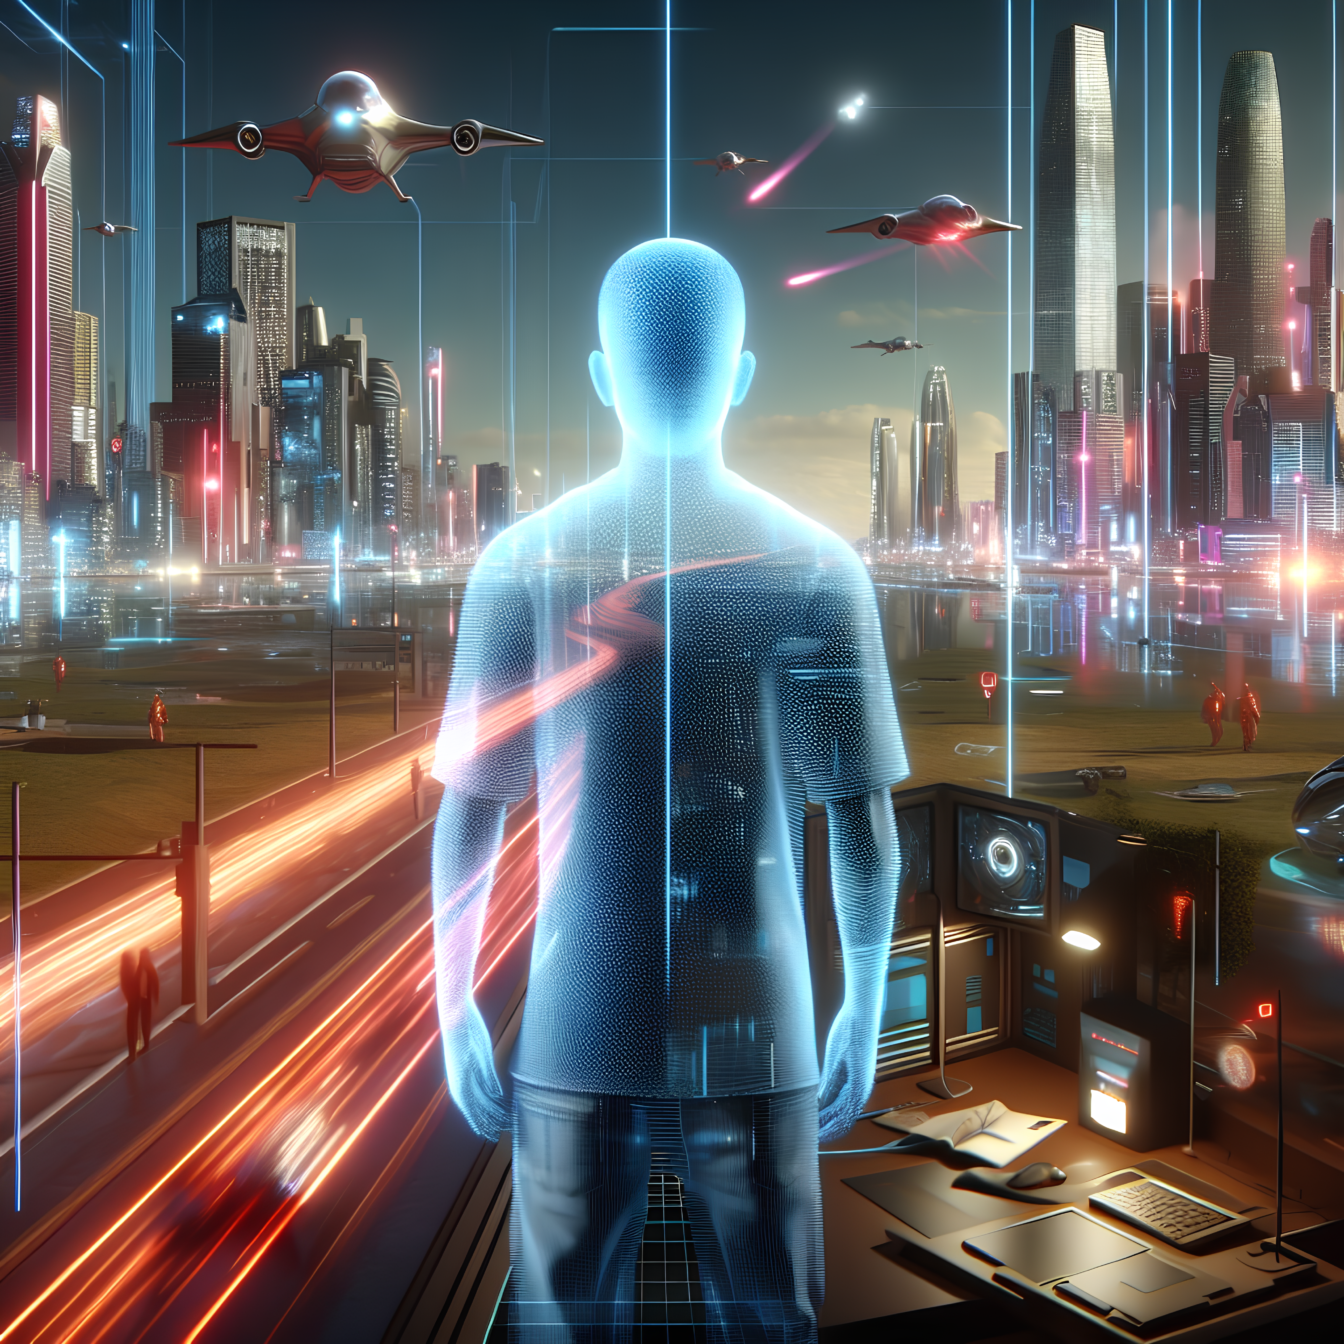 Persoană în interiorul matricei computerizate din lumea virtuală care descrie granița invizibilă dintre viața reală și realitatea virtuală